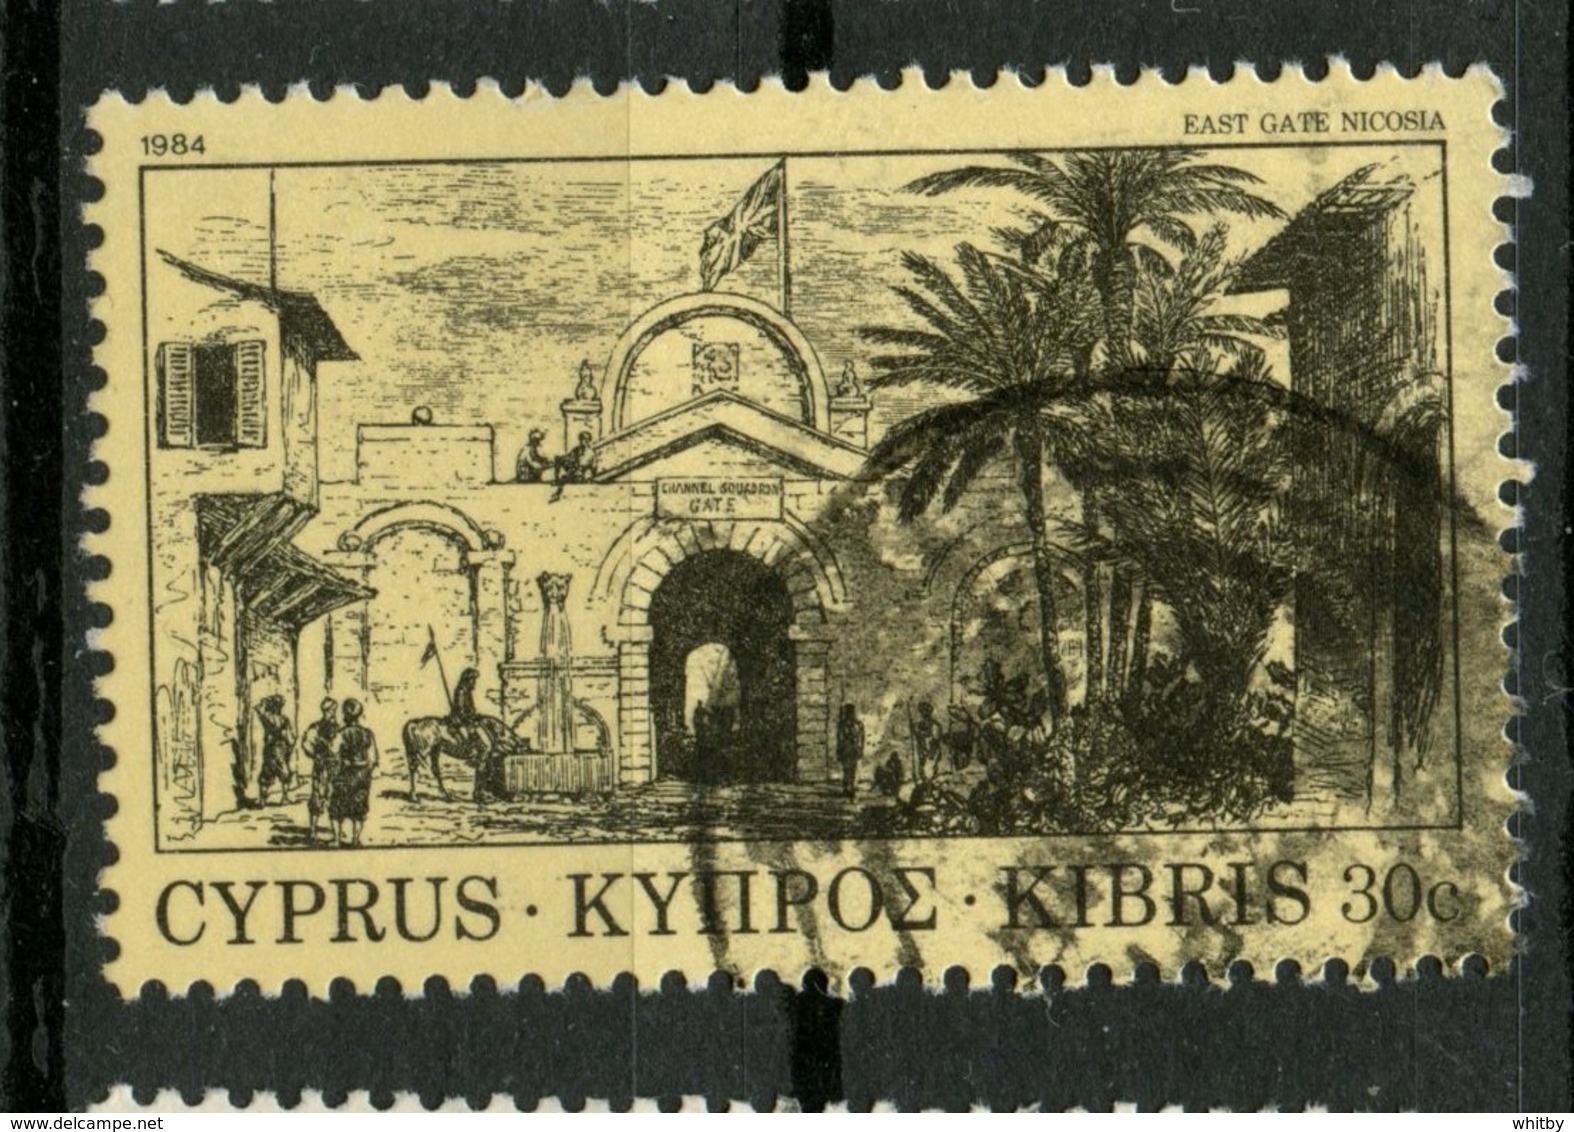 Cyprus1984 30c East Gate Issue #623 - Gebruikt